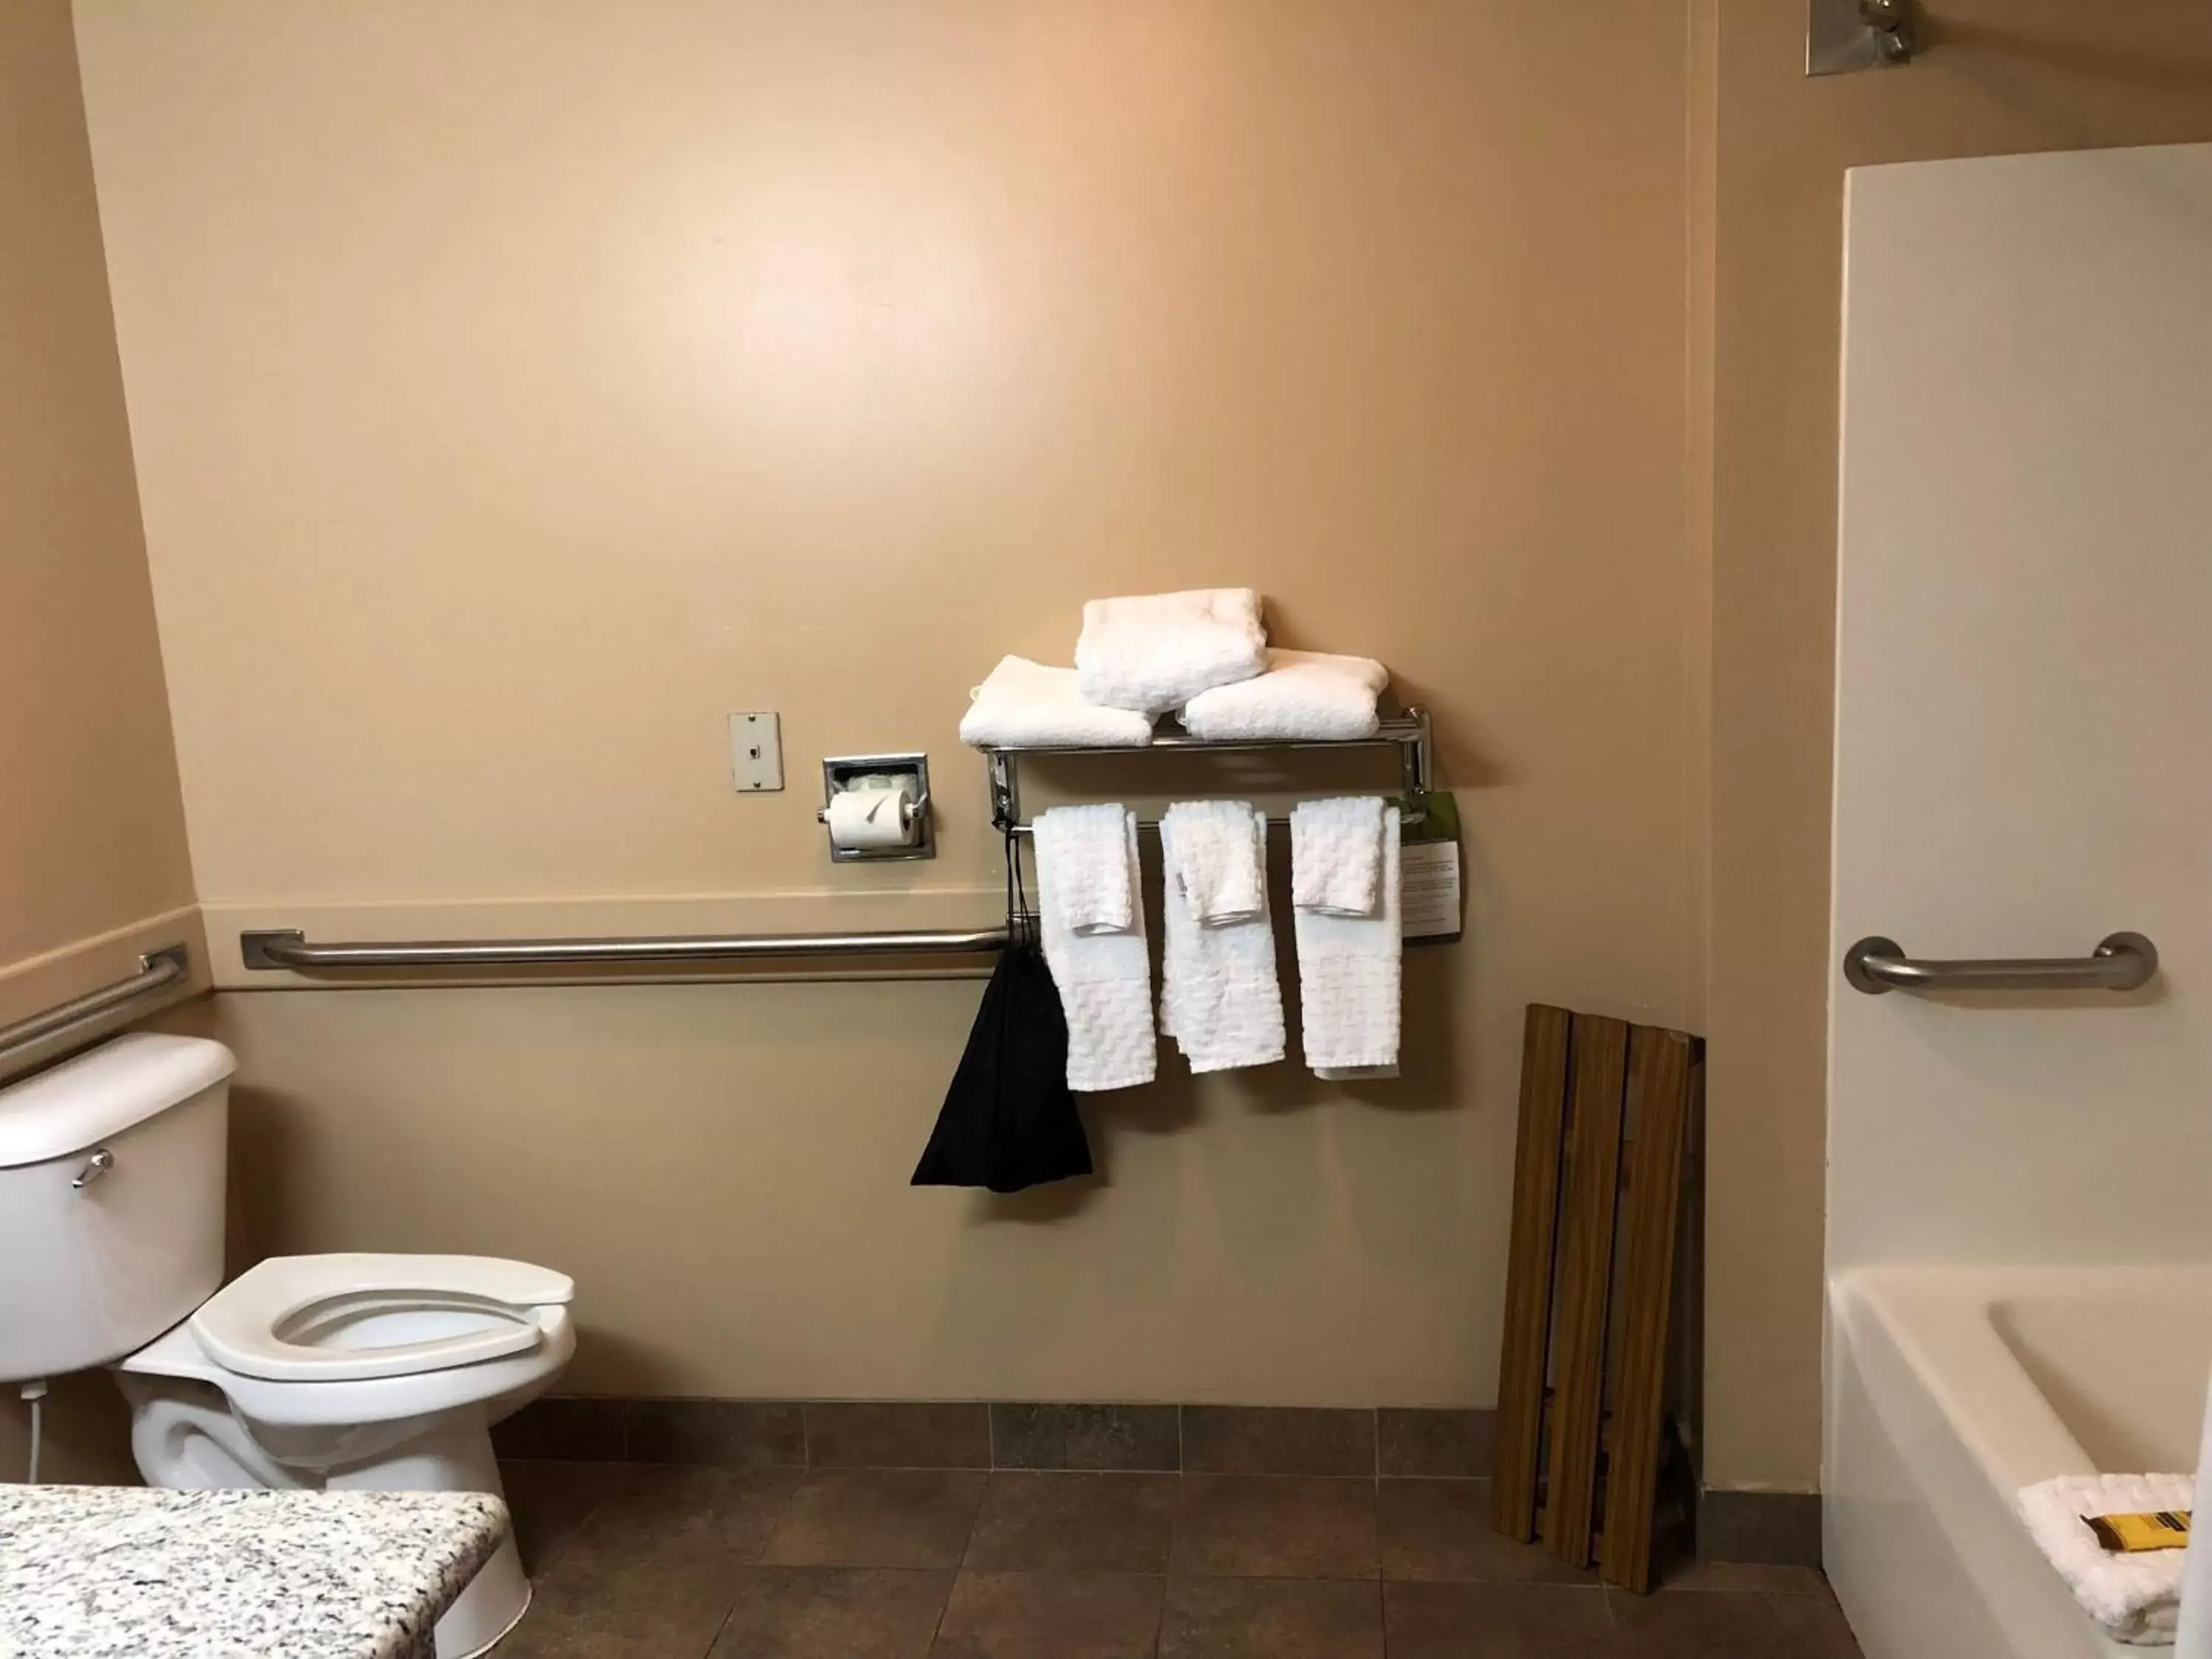 Toilet, Bathroom in Best Western Plus Coldwater Hotel